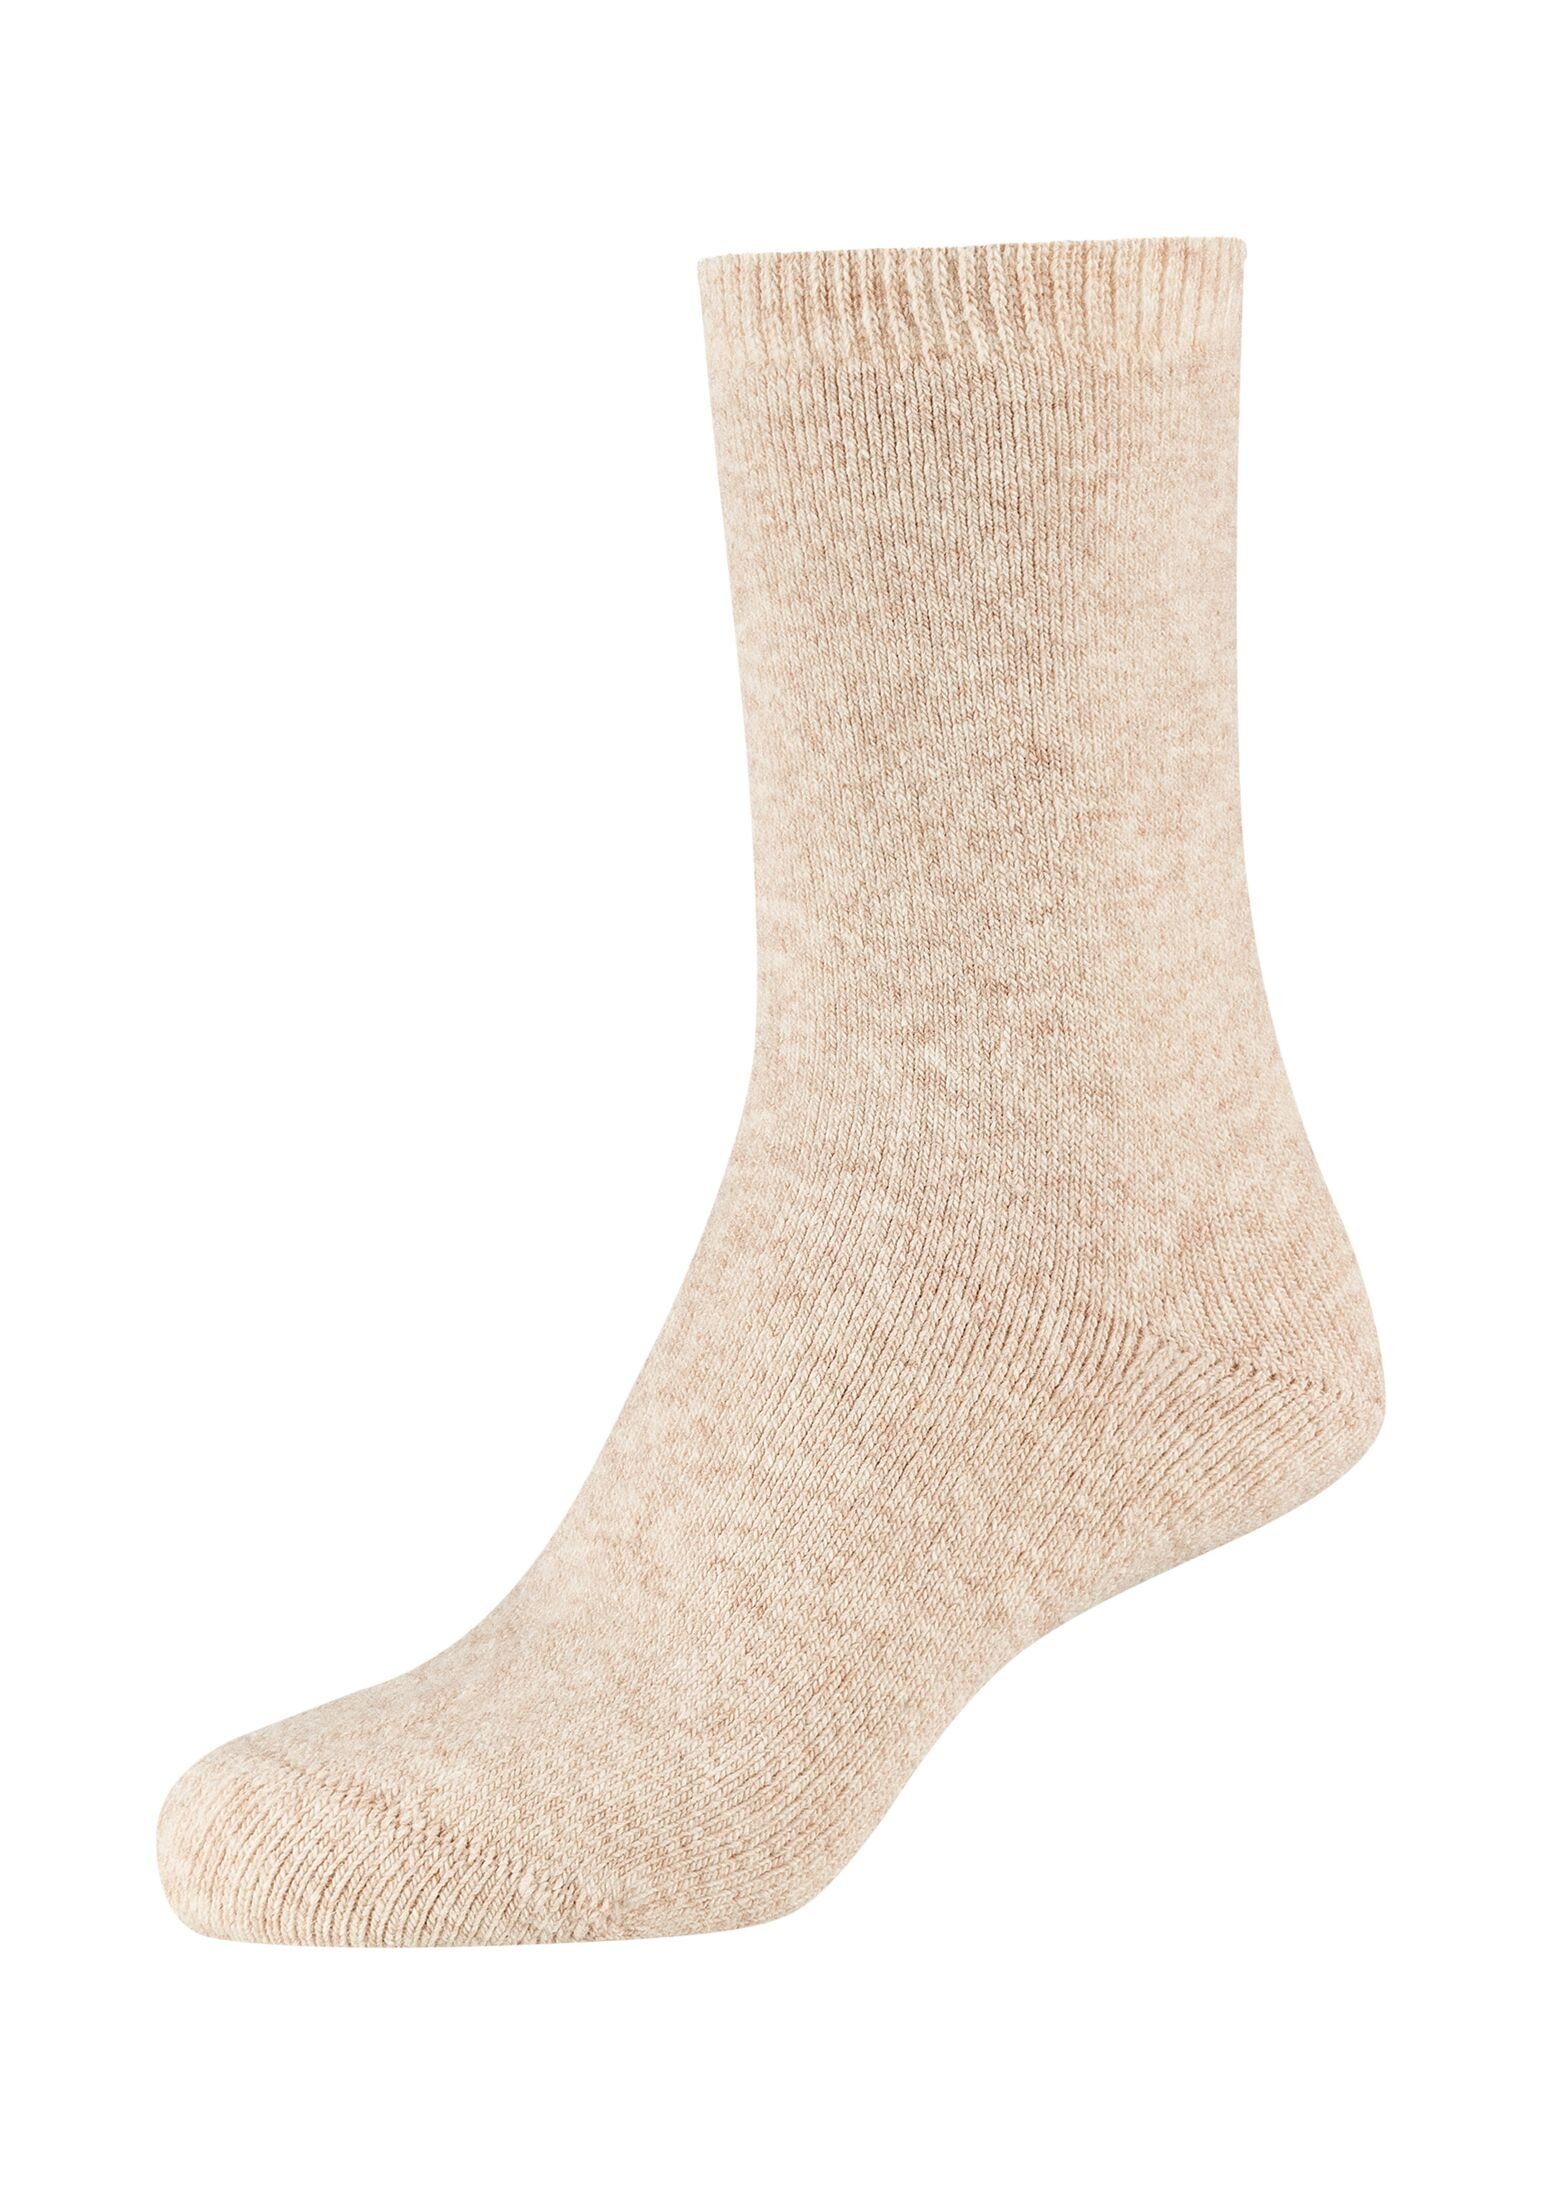 perfekte warm Socken die - Gemütlich und Socken Camano Pack, 2er Bettsocken